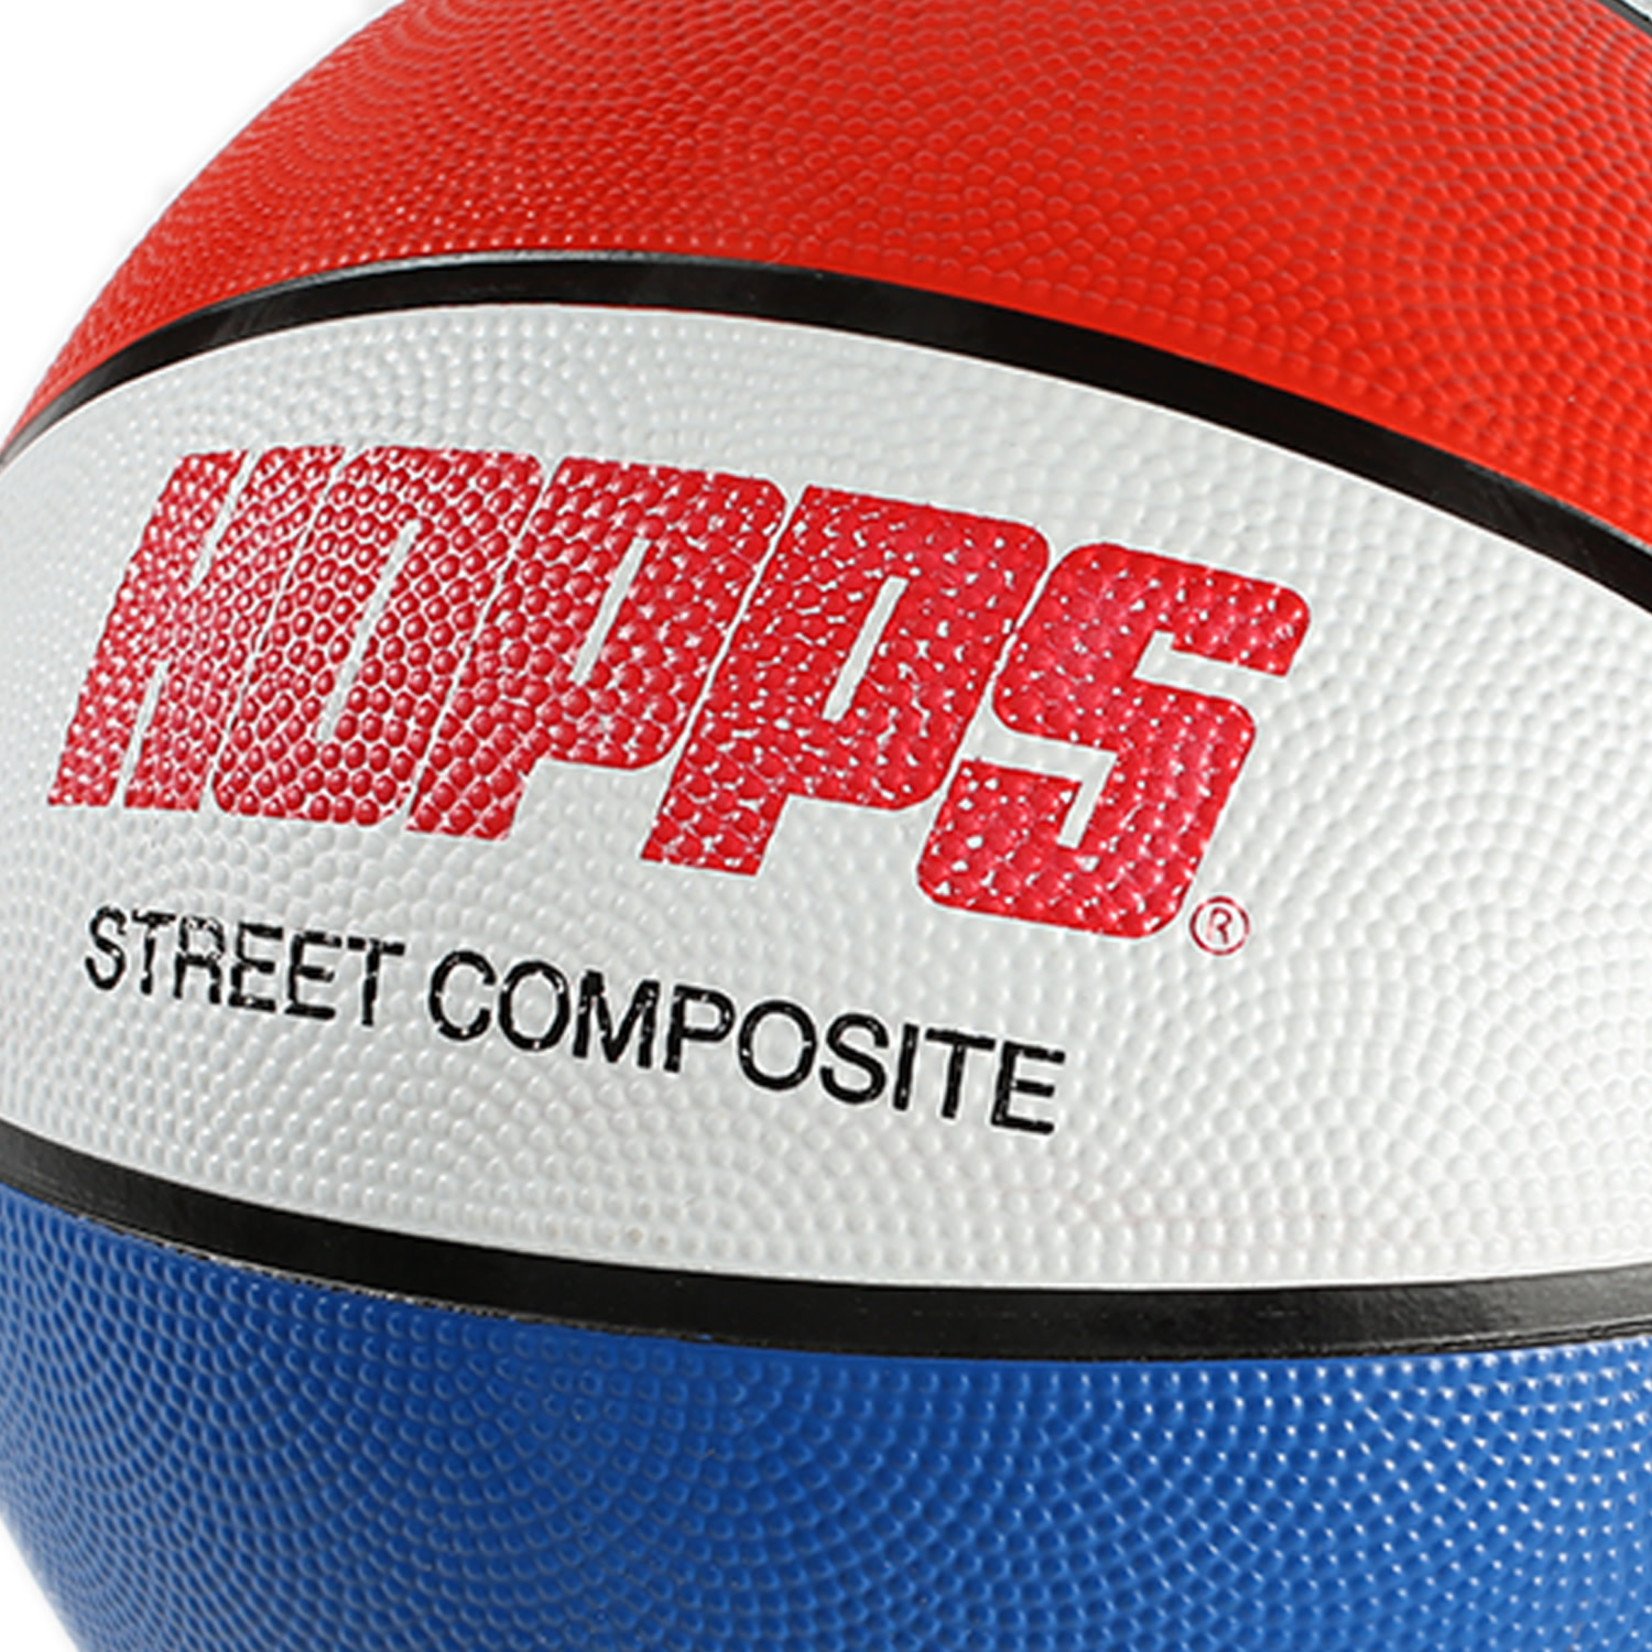 Hopps Hopps Street Composite Basketball